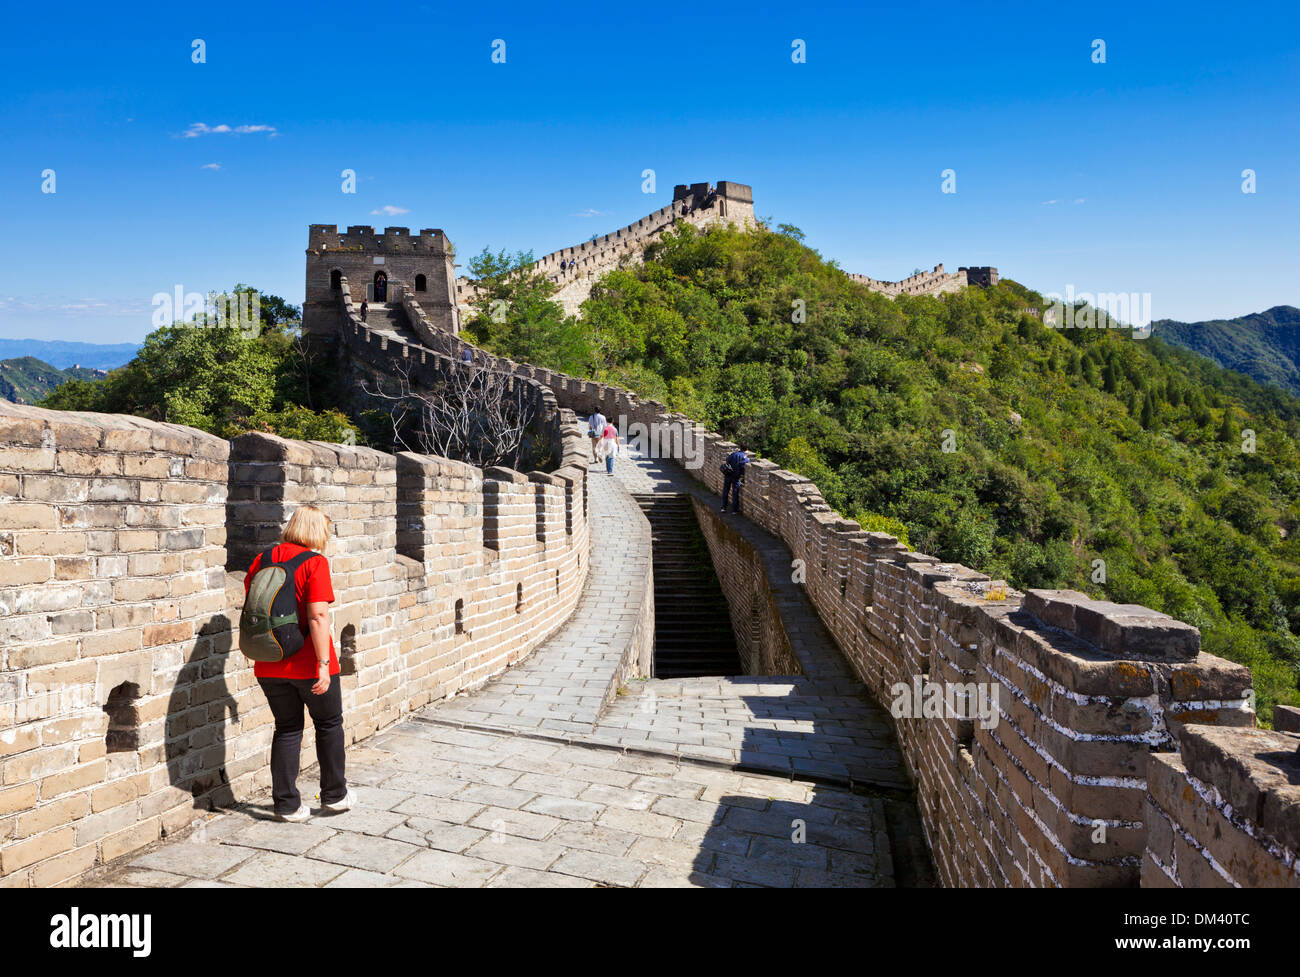 Frau Touristen zu Fuß auf der Great Wall Of China, UNESCO-Weltkulturerbe, Mutianyu, Bezirk von Peking, China, Asien Stockfoto